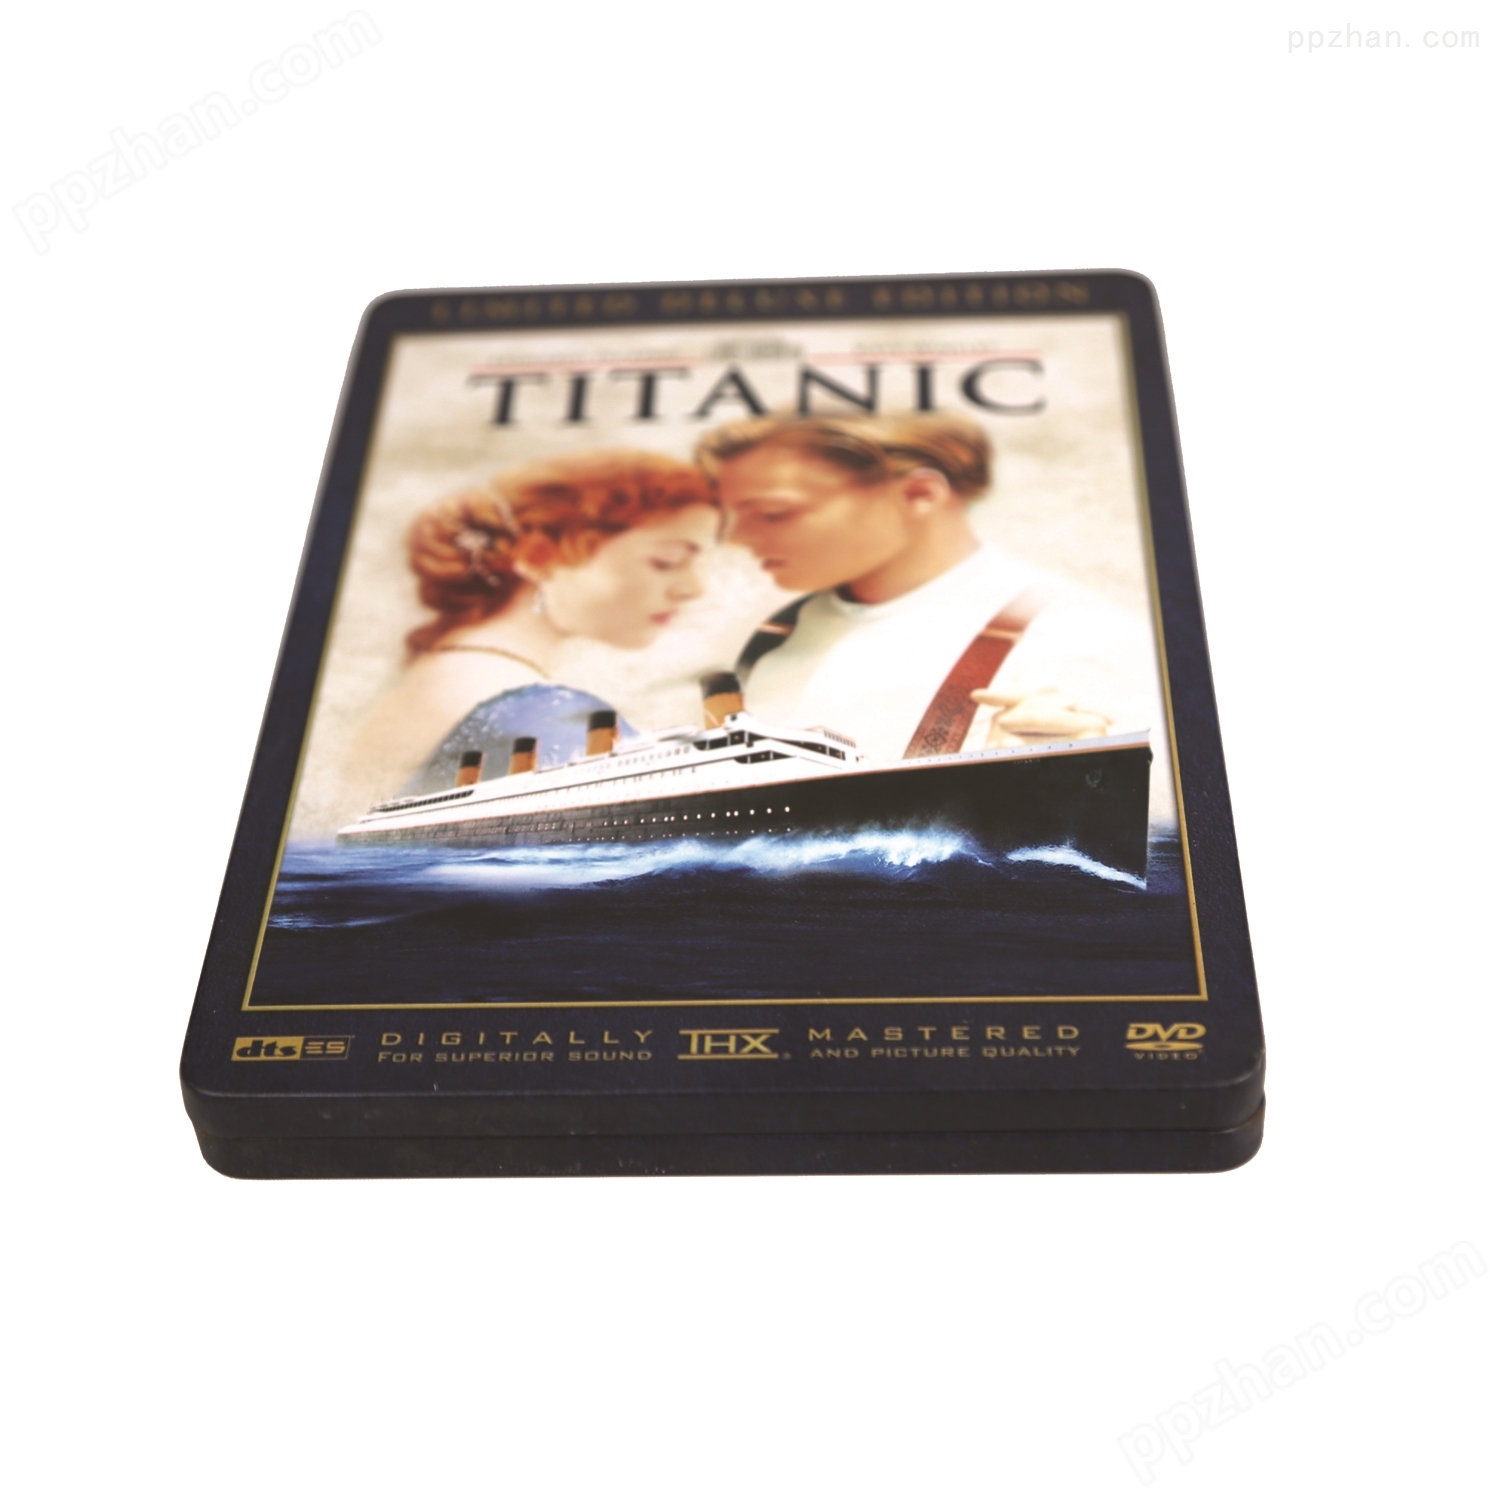 经典电影泰坦尼克号DVD包装盒马口铁盒